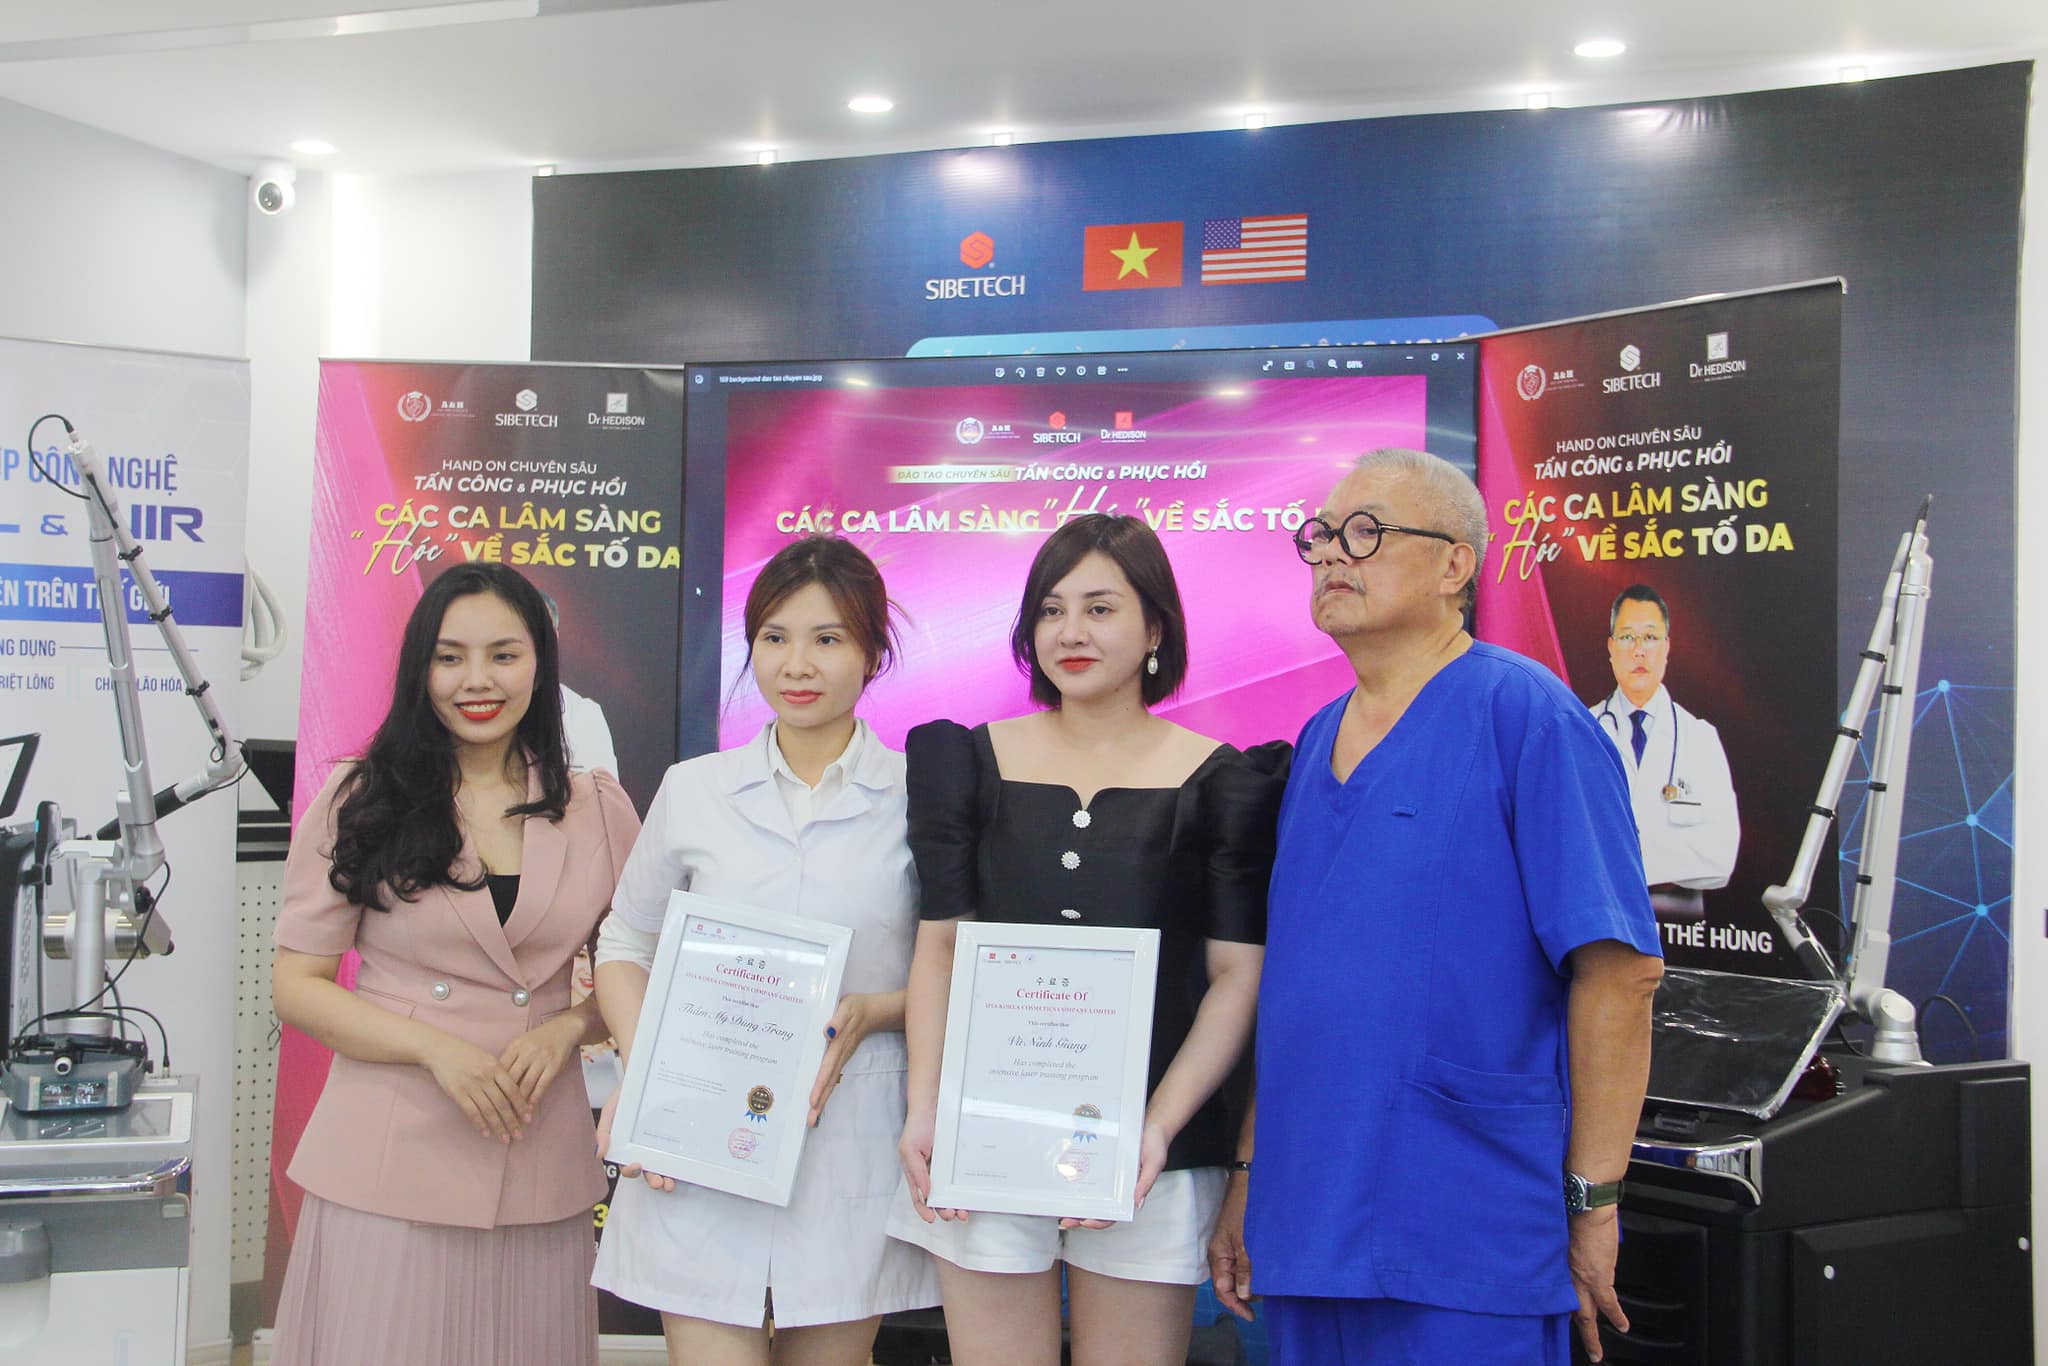 Bác sĩ Hùng cùng với bác sĩ Trang trao chứng nhận cho các học viên